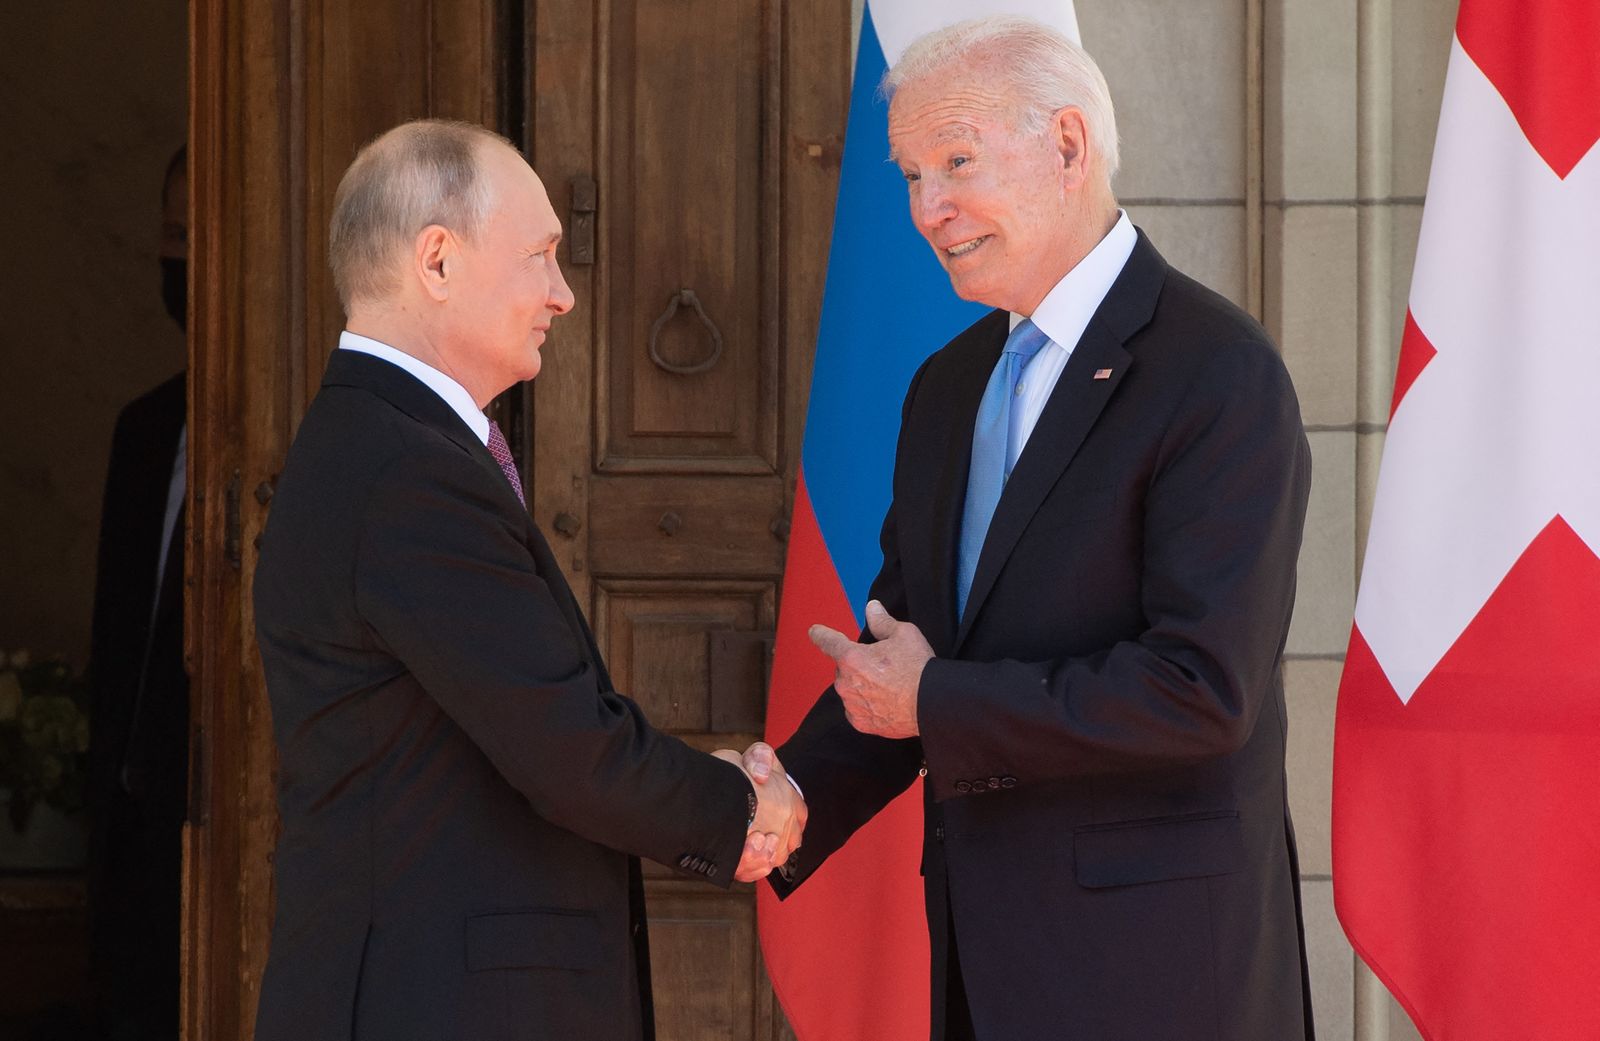 الرئيس الأميركي جو بايدن يصافح نظيره الروسي فلاديمير بوتين خلال قمة جنيف الأخيرة- 16 يونيو 2021 - AFP